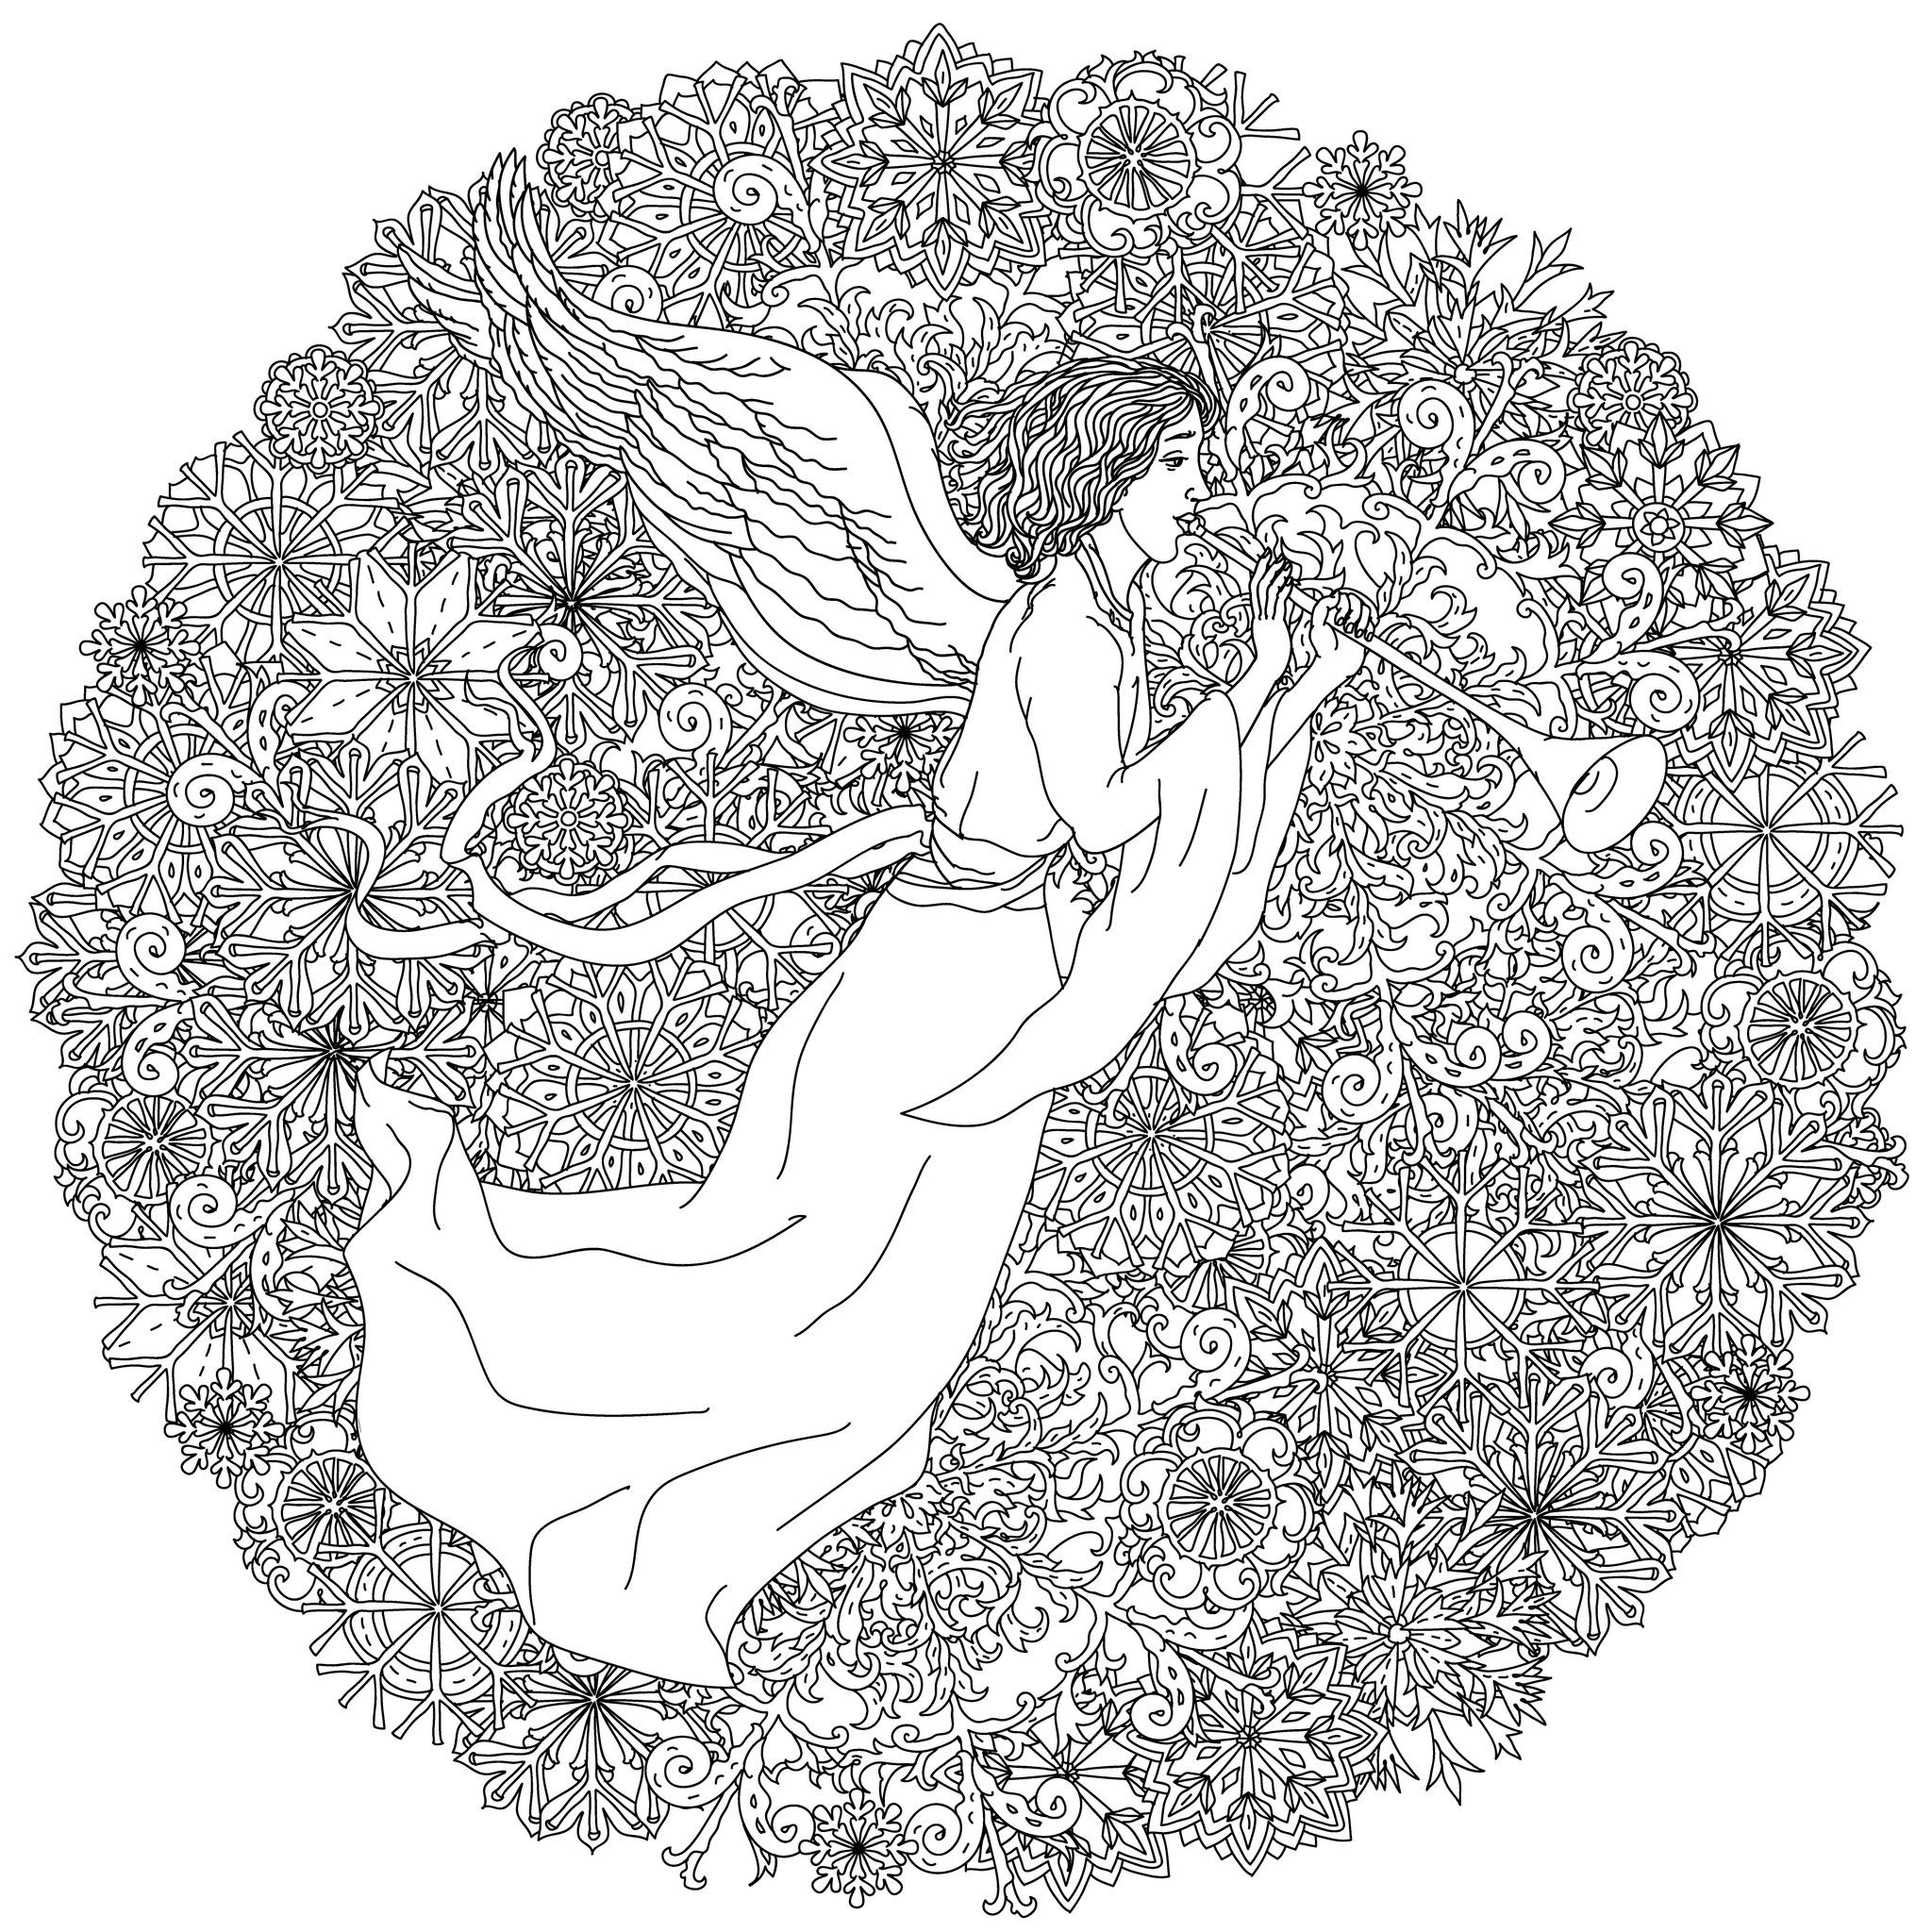 Colorea este increíble dibujo circular con un ángel rodeado de un montón de copos de nieve, Origen : 123rf   Artista : Mashabr